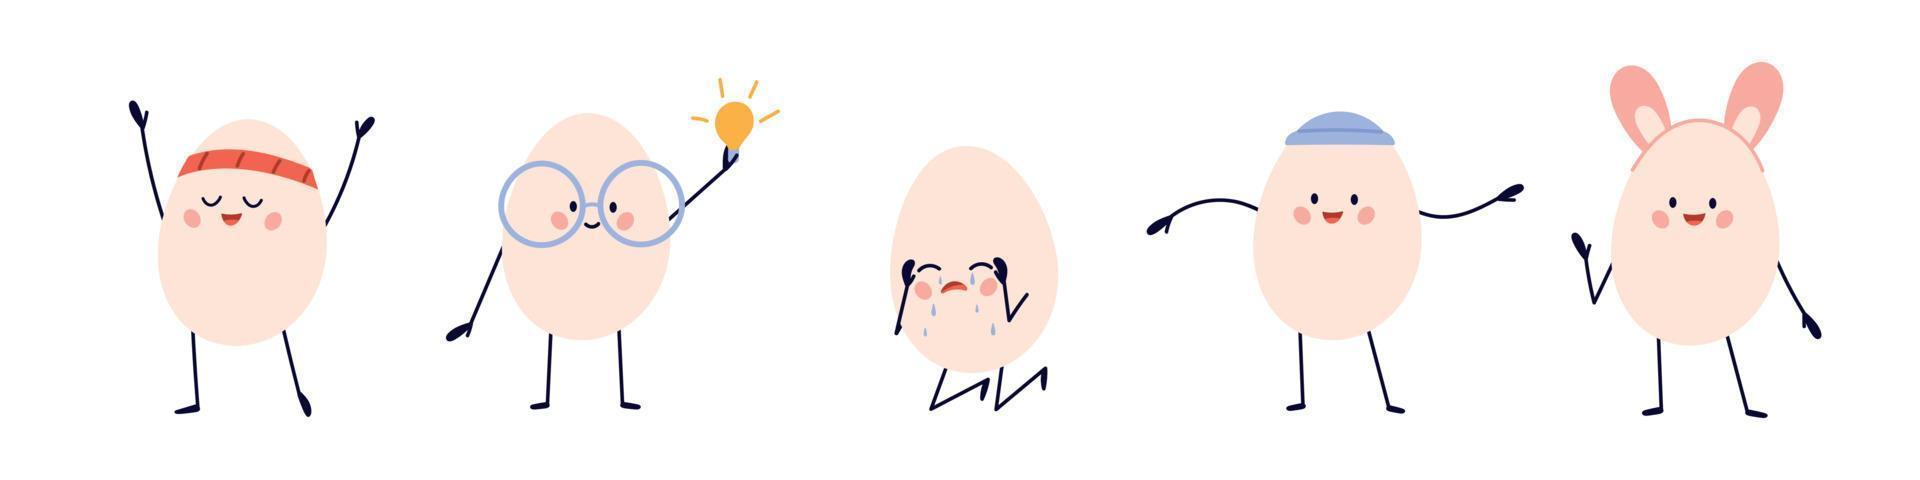 personagem de ovos fofos. emoji engraçado eggheads para a páscoa ou o dia mundial do ovo. ilustração vetorial de desenho animado infantil isolada no fundo branco vetor